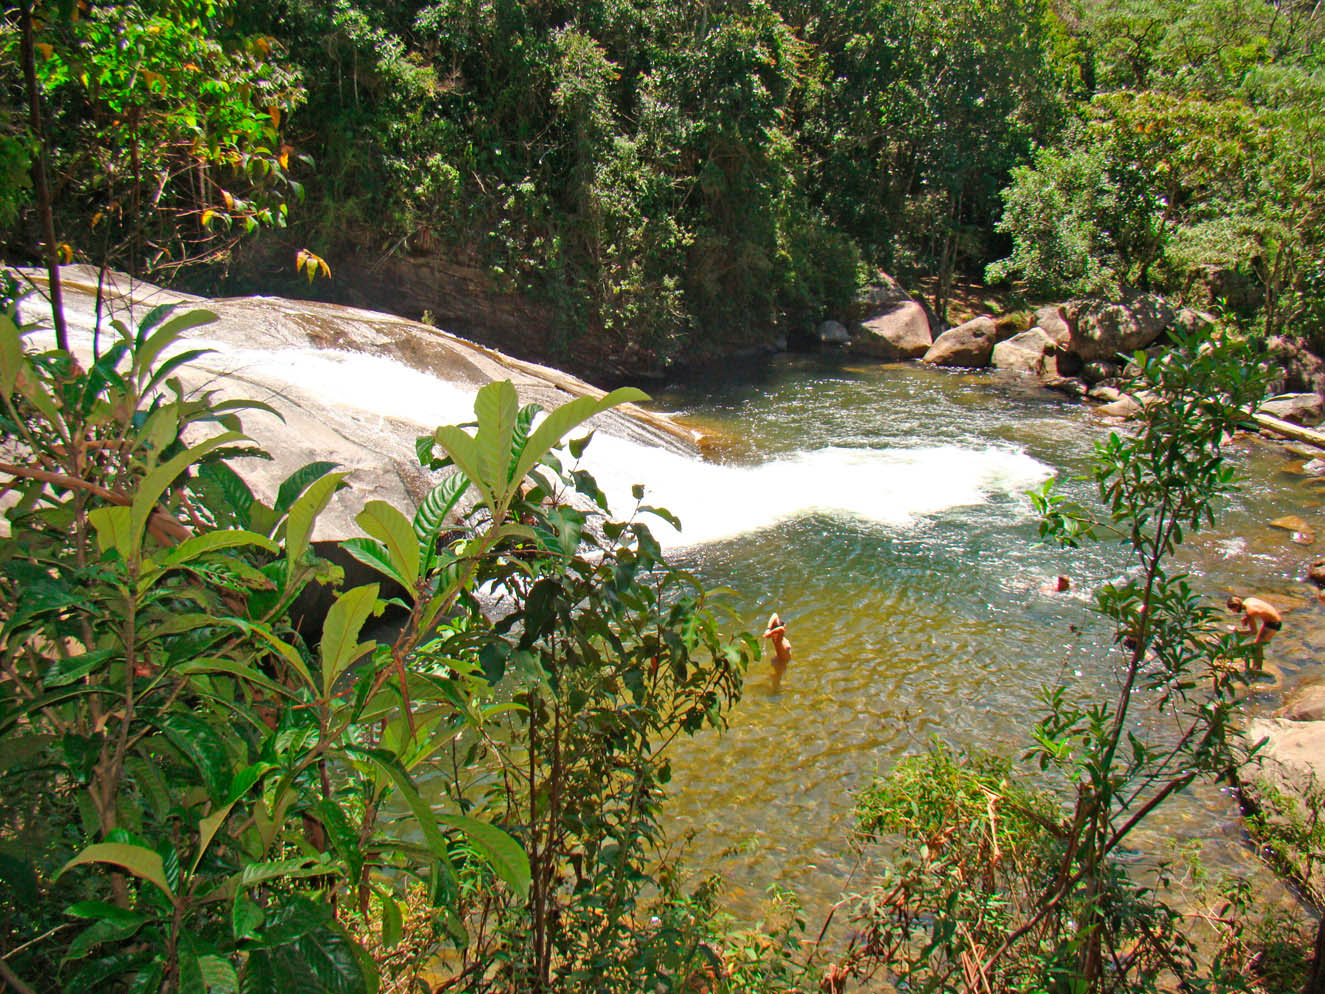 Turismo - Cachoeira do Escorrega - Hotel Pousada Cruzeiro do Sul - Visconde de Mauá - RJ